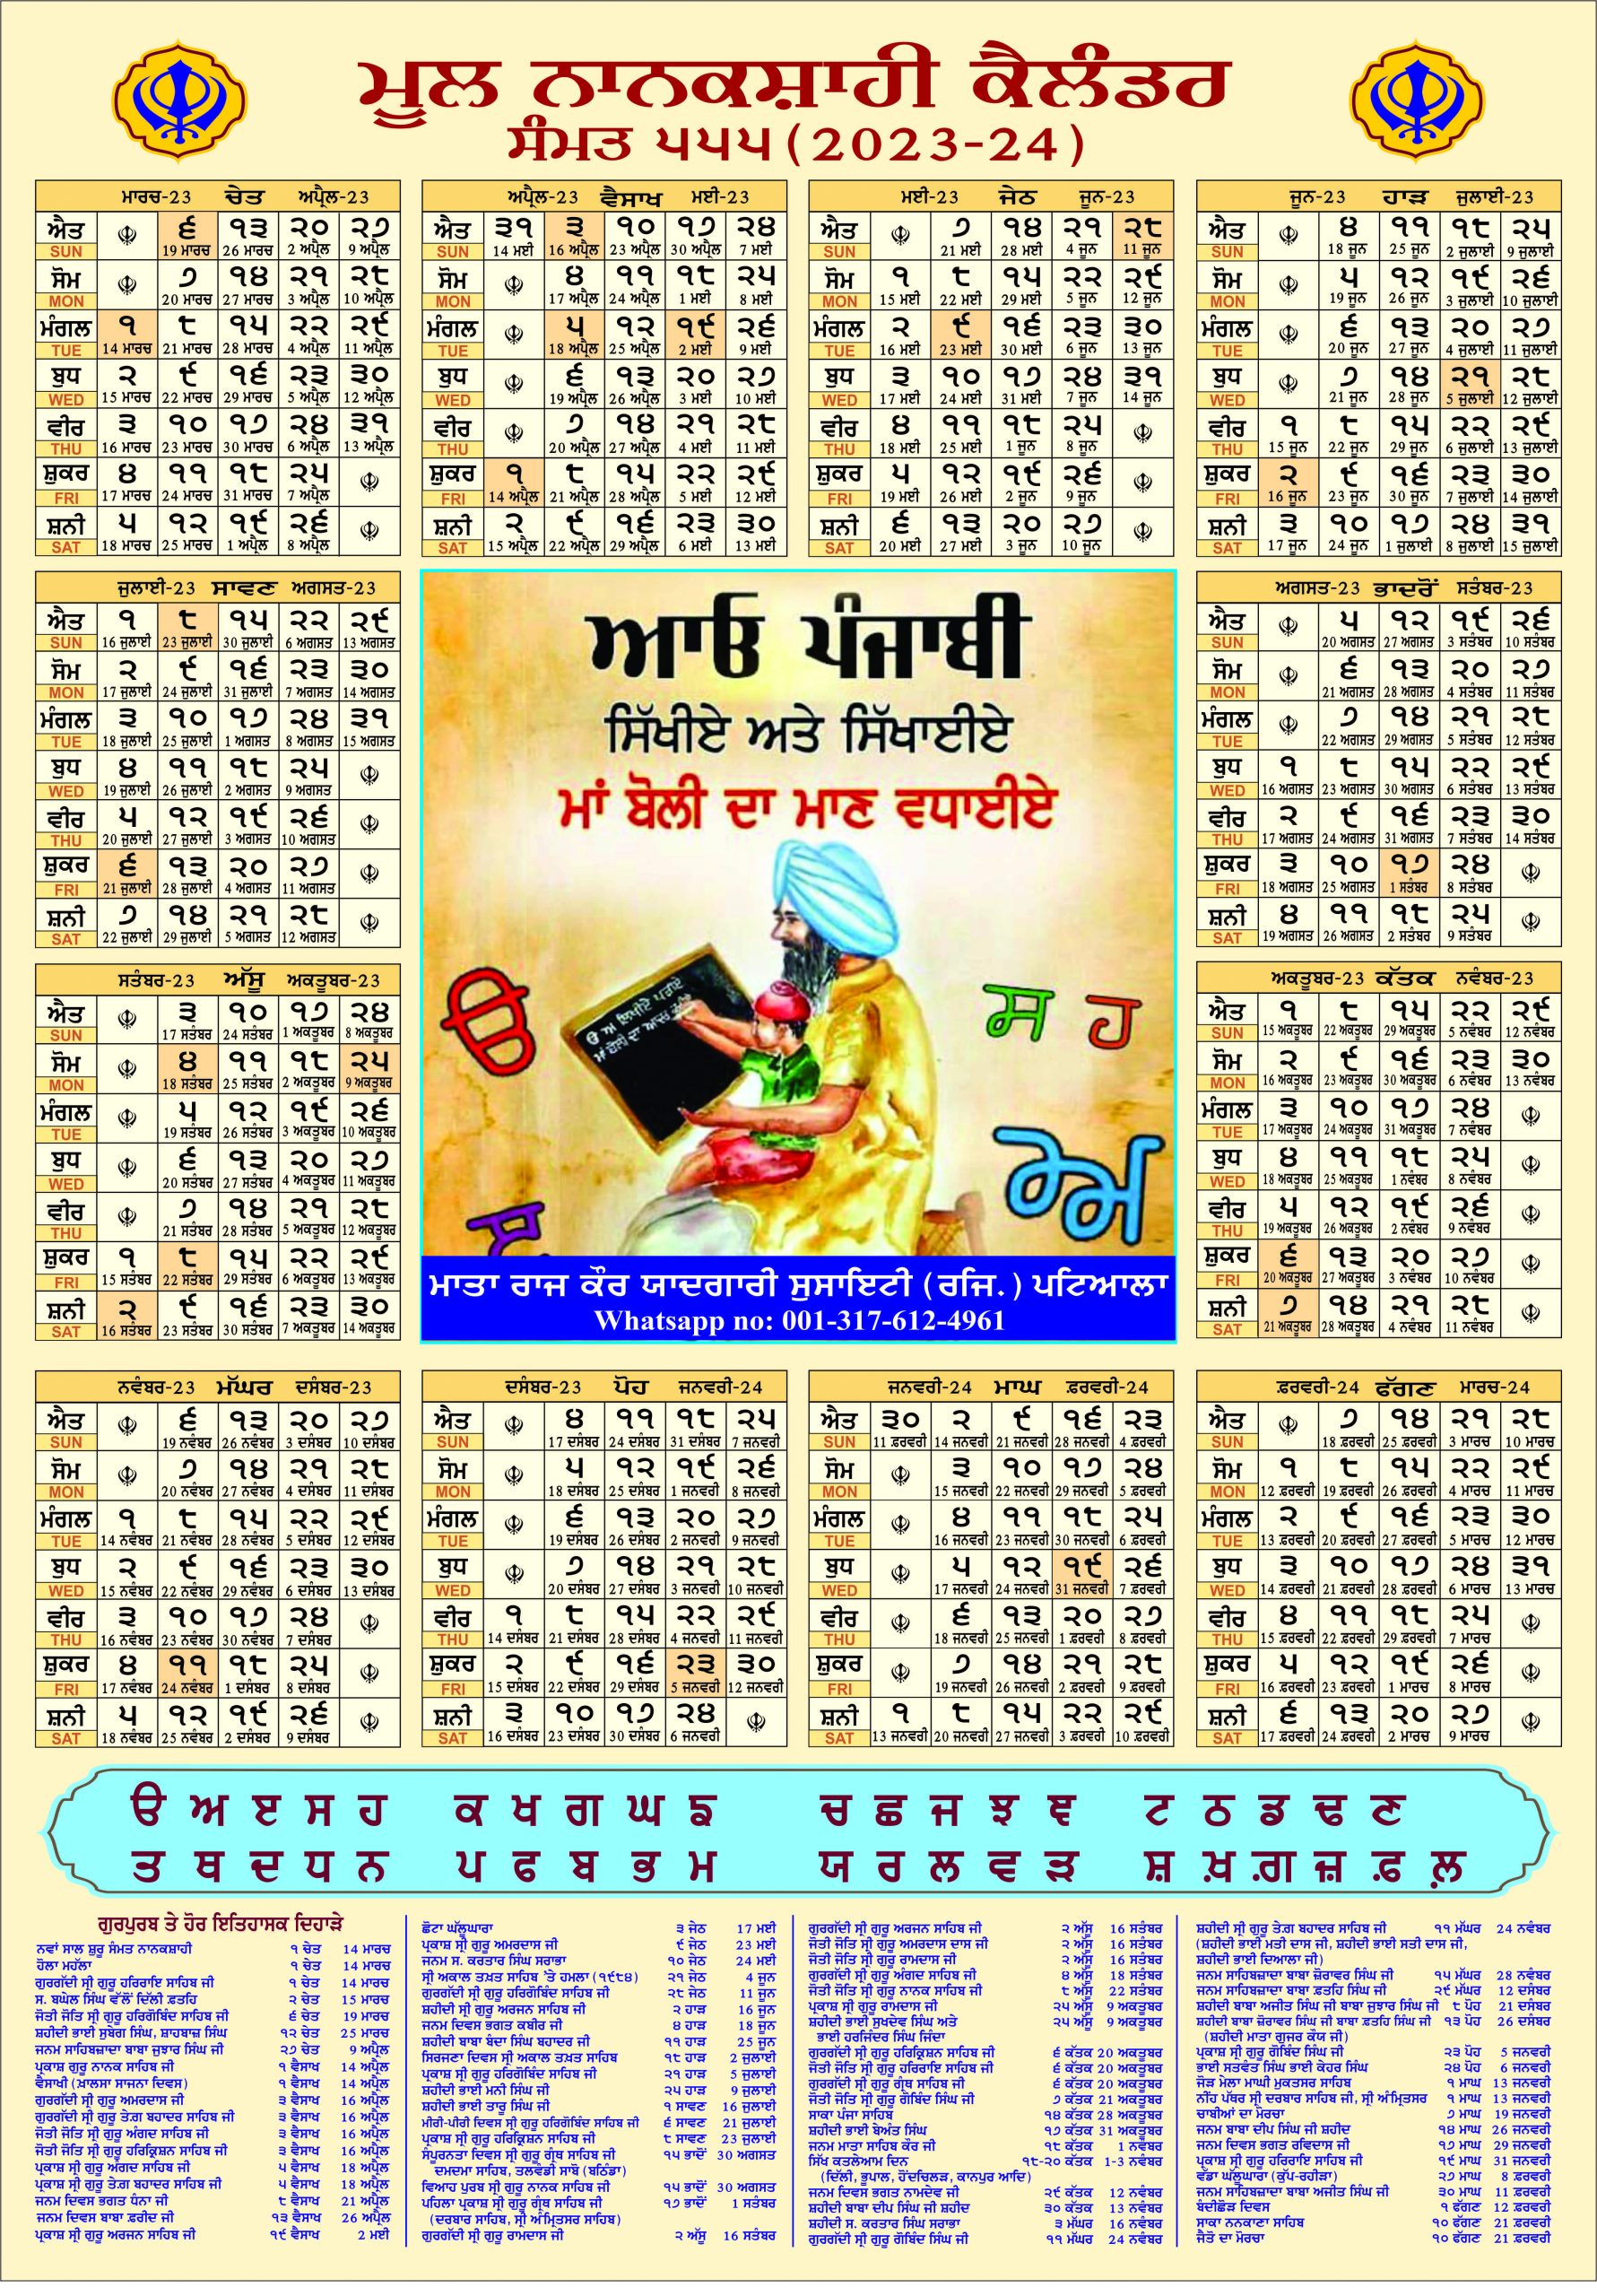 Mool Nanakshahi Calendar The Original Sikh Calendar Based On Gurbani Sikh History Facts And